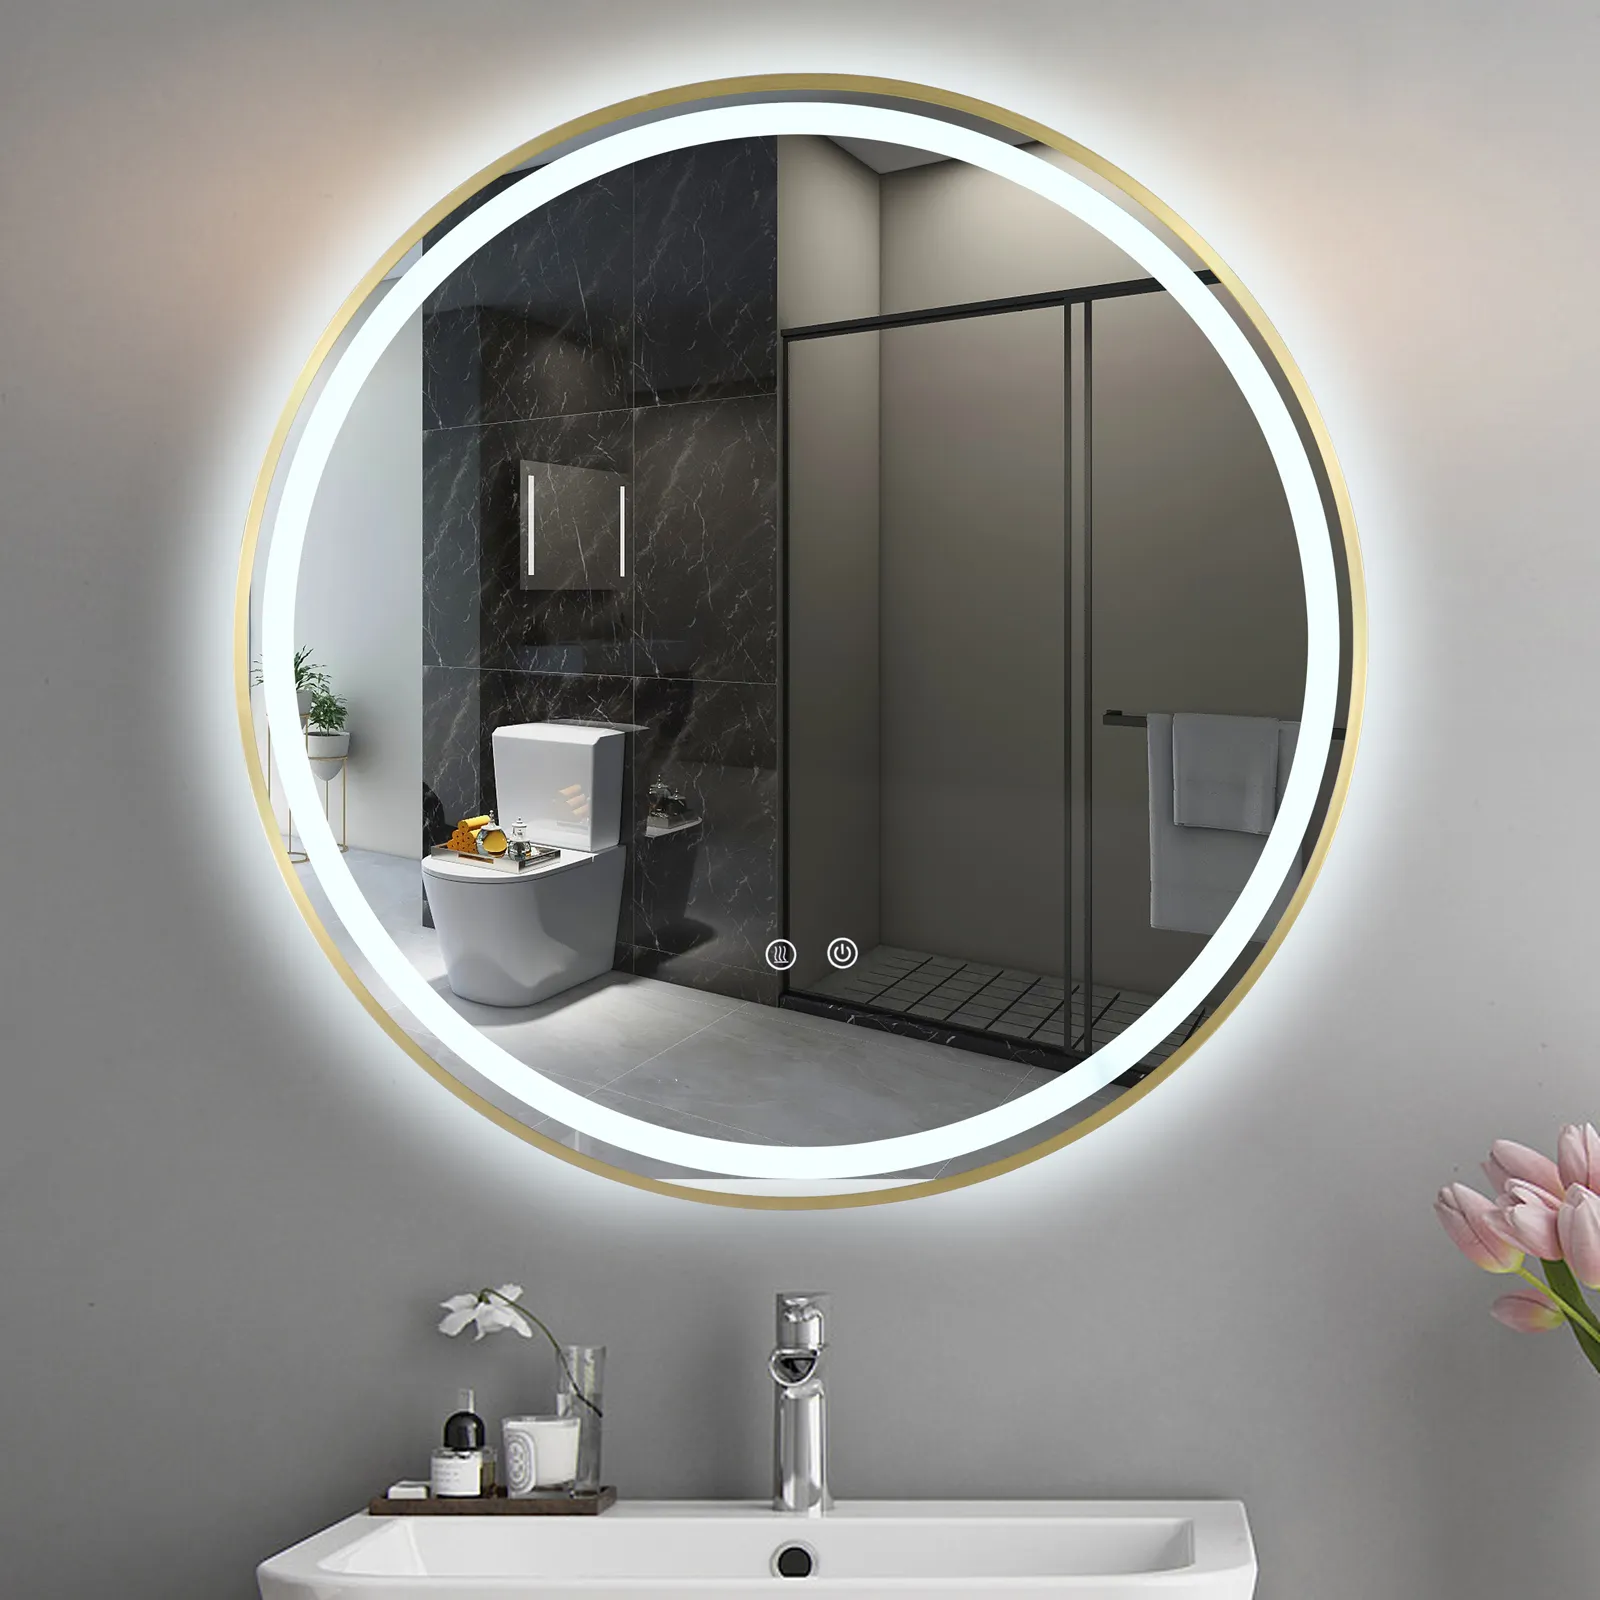 공장 공급 벽걸이 HD 메이크업 거울 3 색 조정 LED 백라이트 라운드 스마트 욕실 거울